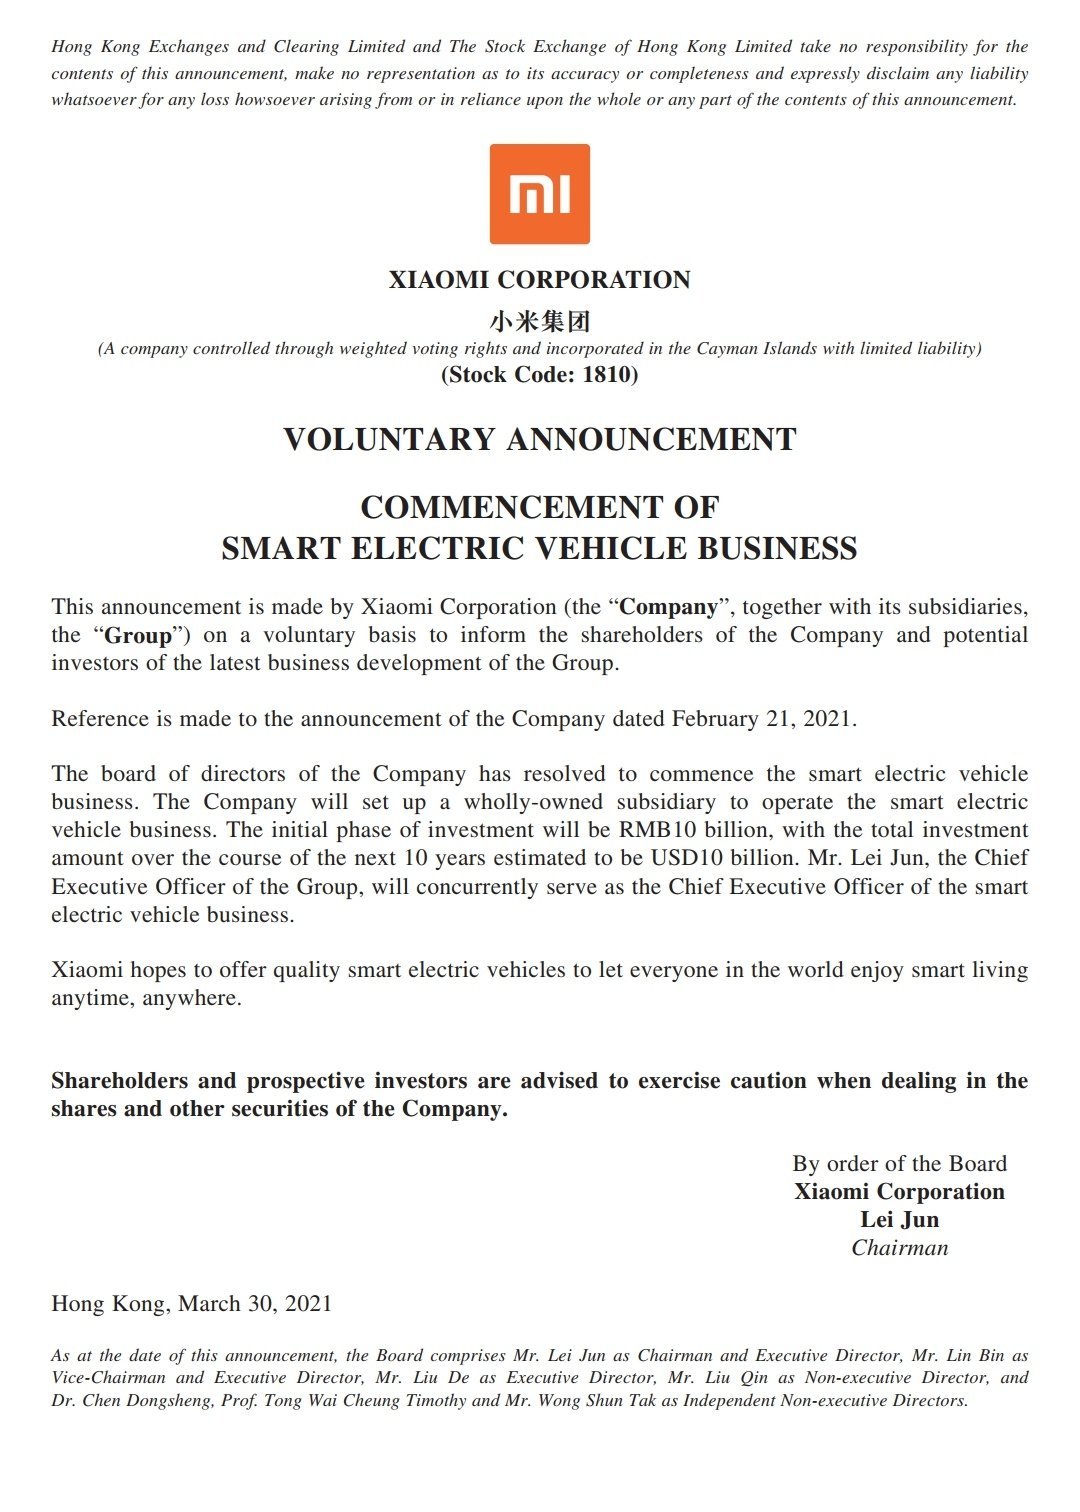 Comunicado oficial de Xiaomi confirmando su entrada en el sector de los coches eléctricos.